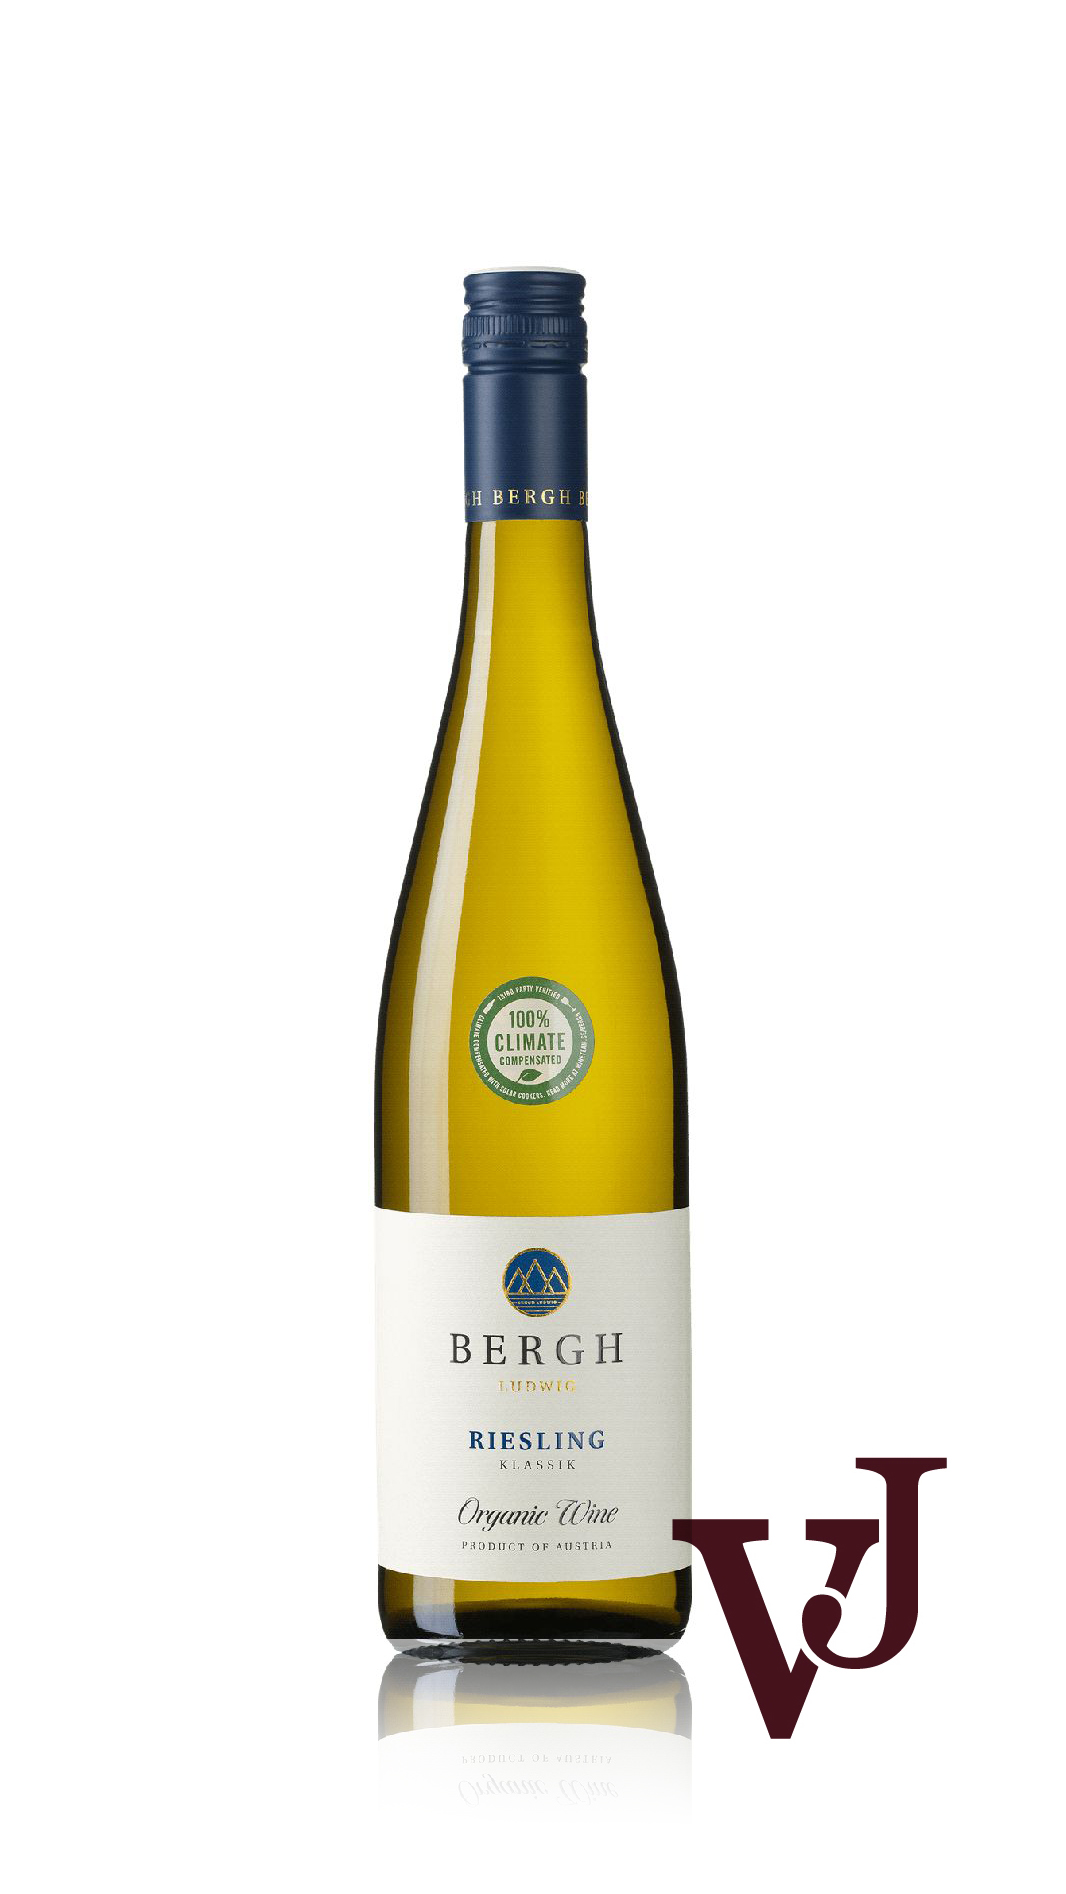 Vitt Vin - Bergh Riesling Organic artikel nummer 8110901 från producenten Icon Wines från området Österrike - Vinjournalen.se